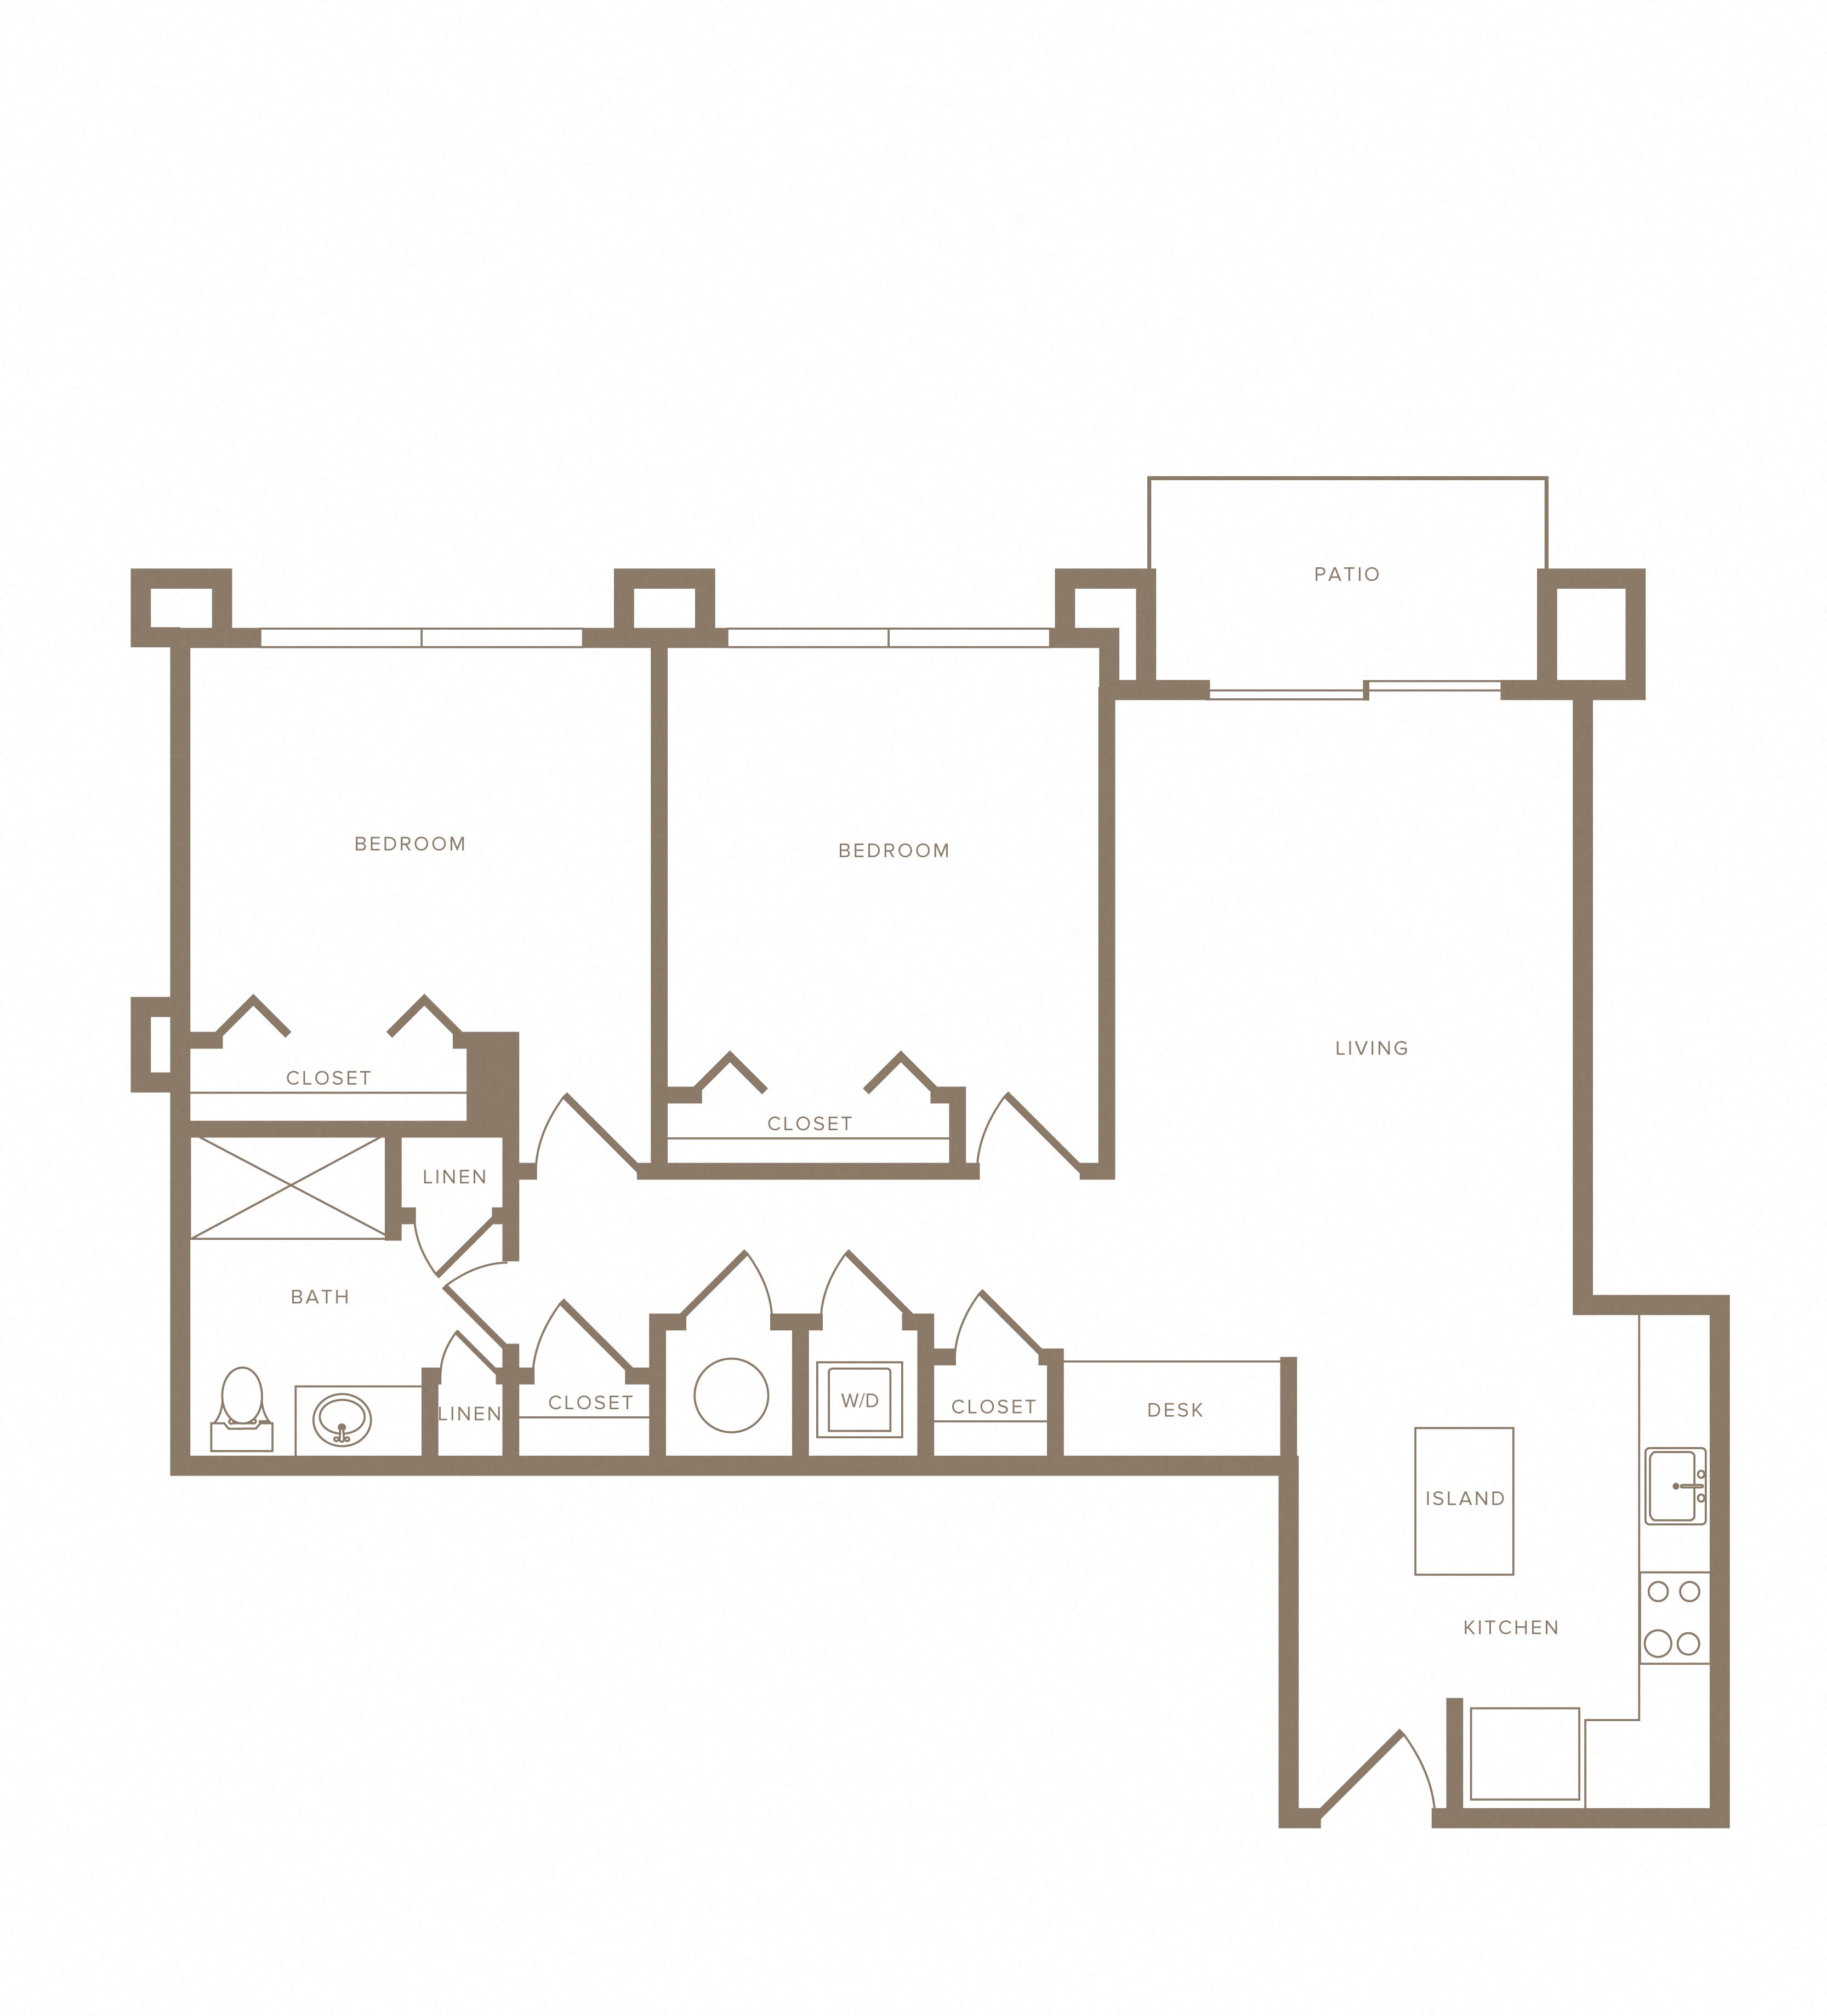 Apartment C-102 floorplan